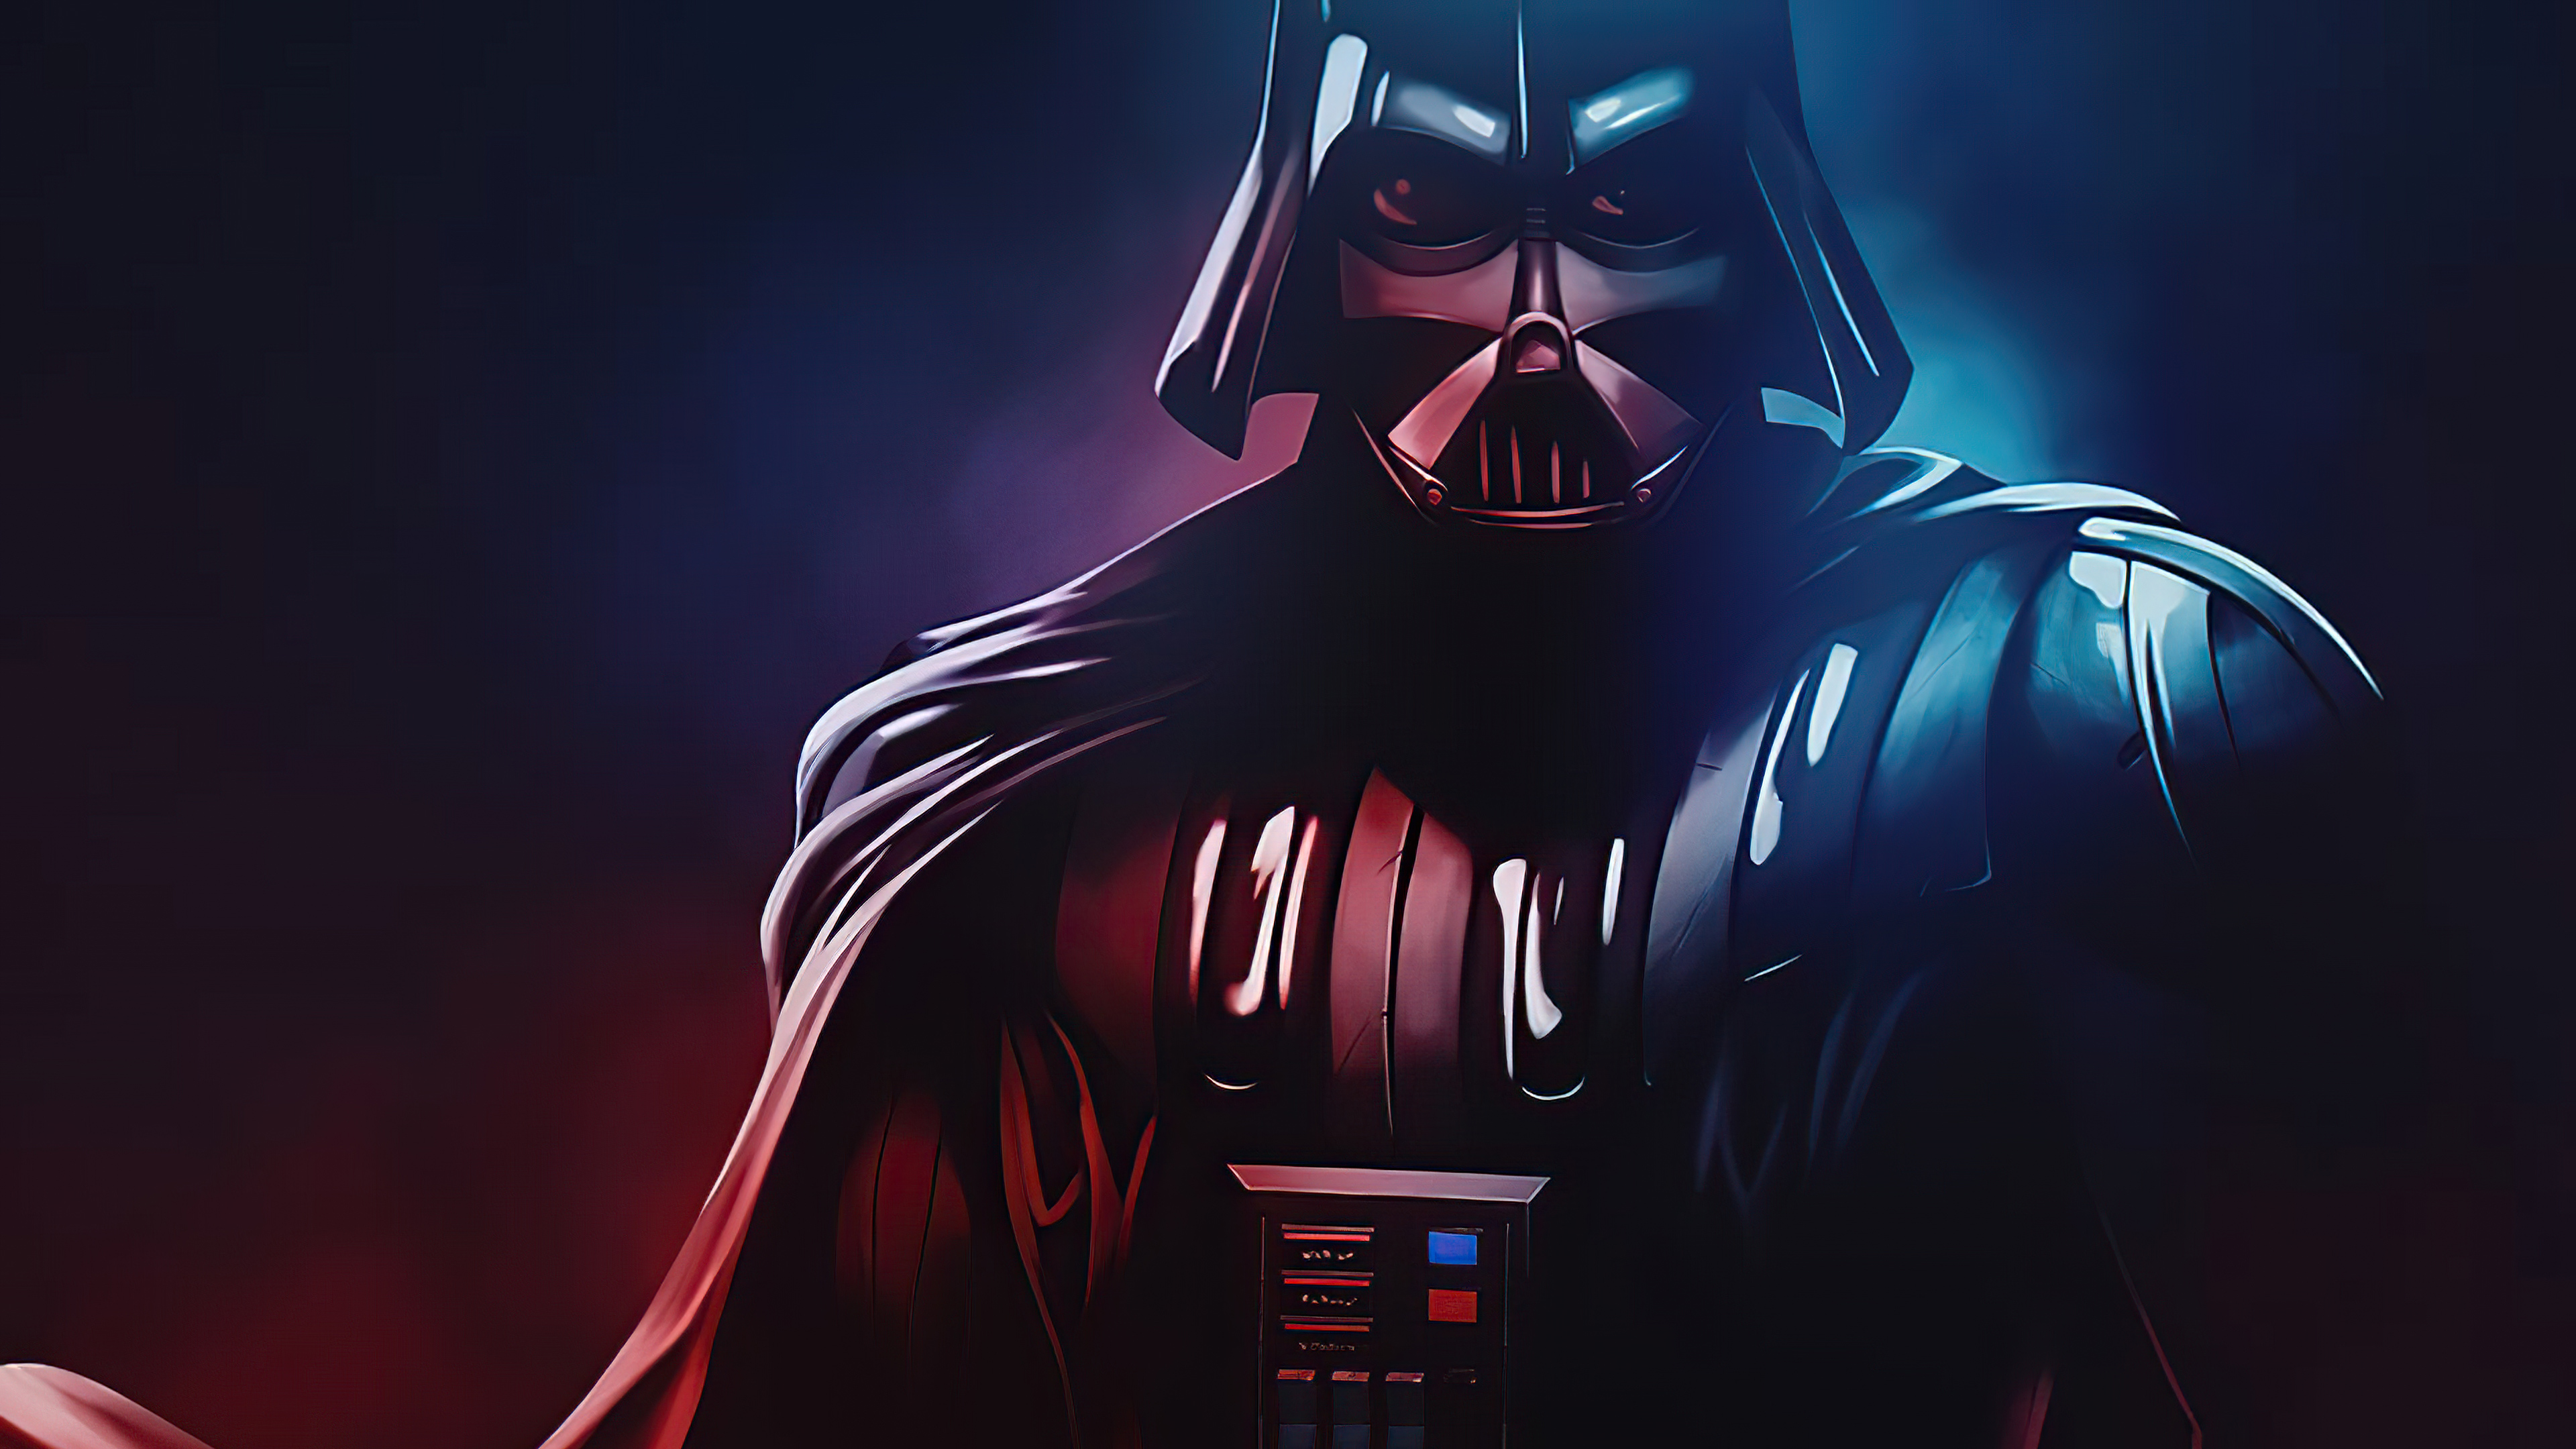 Darth Vader Star Wars 2021 Wallpaper Wallpaper Popular Darth Vader Star Wars 2021 Wallpaper Background